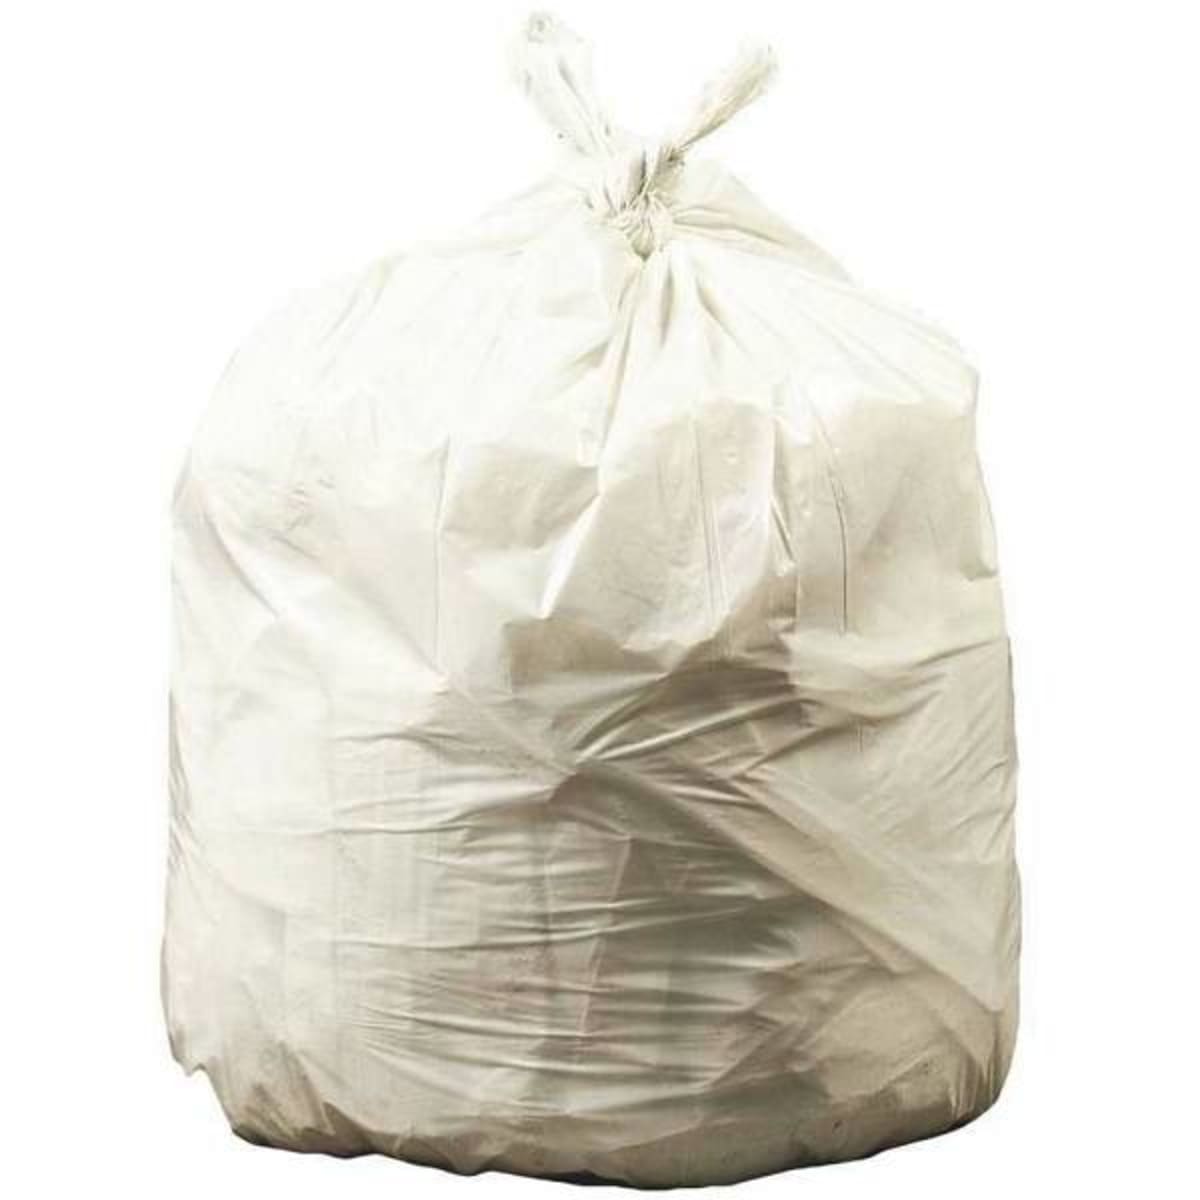 30 x 37 Natural 30 Gallon 13 Micron Trash Bags 500/cs